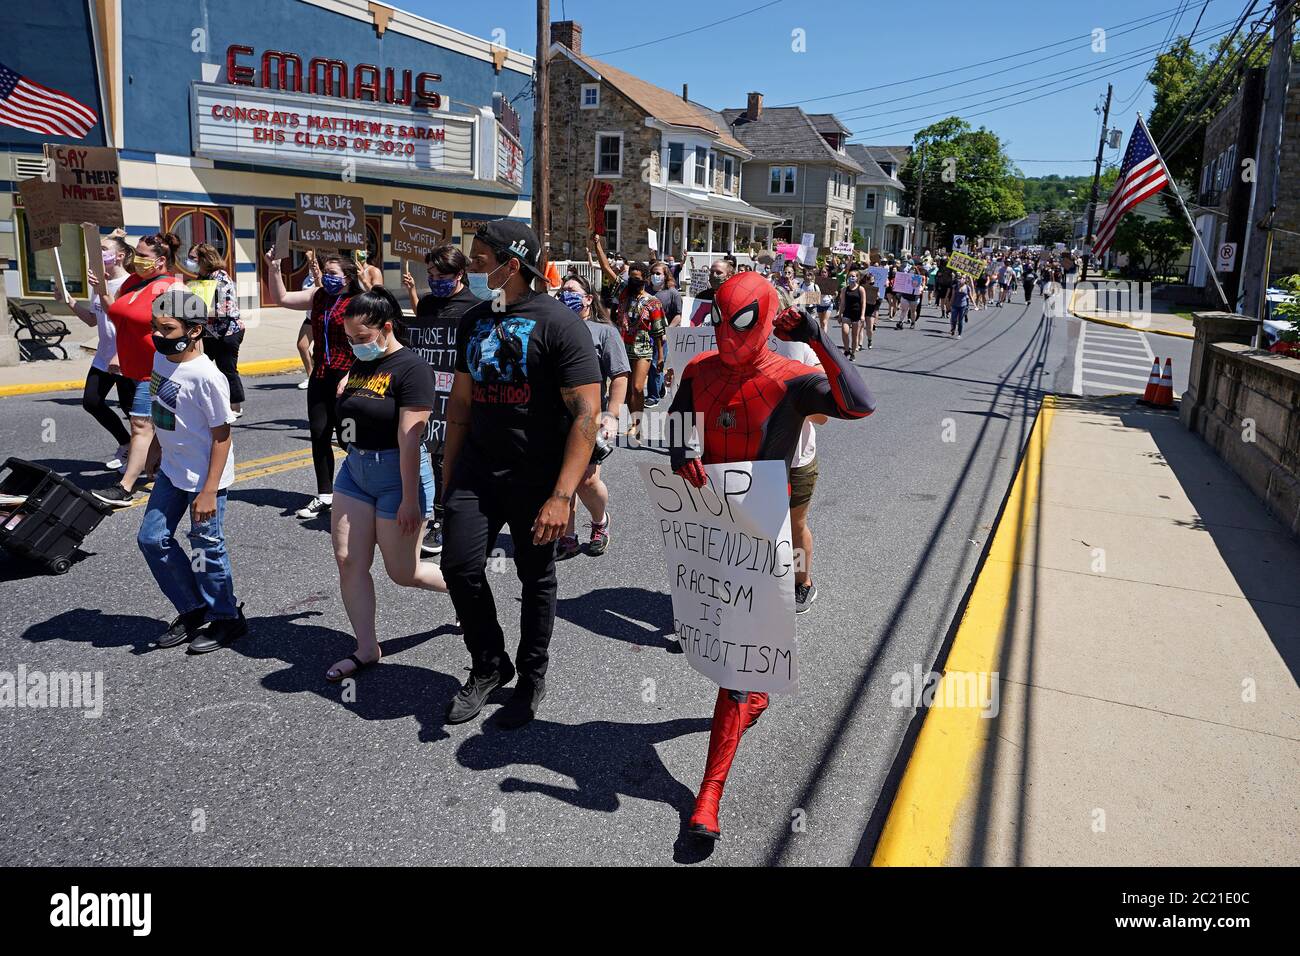 Des centaines se sont rassemblées le 14 juin 2020 pour une marche de paix à l'appui de Black Lives Matter dans le petit quartier de Emmaus, en Pennsylvanie. Banque D'Images